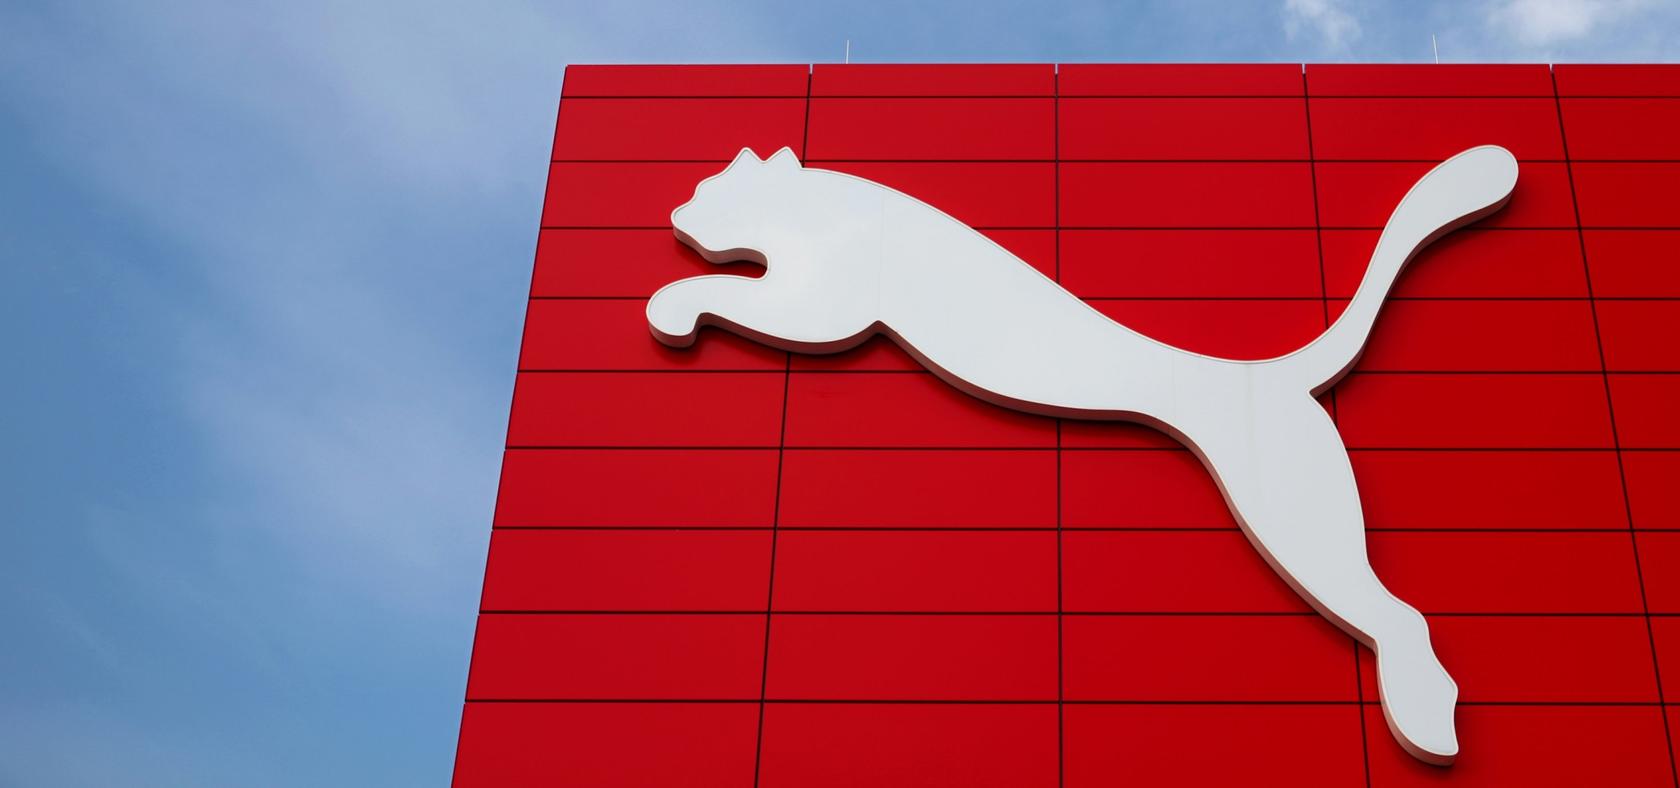 Setzt in Zukunft wieder auf den Schuhkarton statt auf den Öko-Beutel: Der Herzogenauracher Sportartikelhersteller Puma.